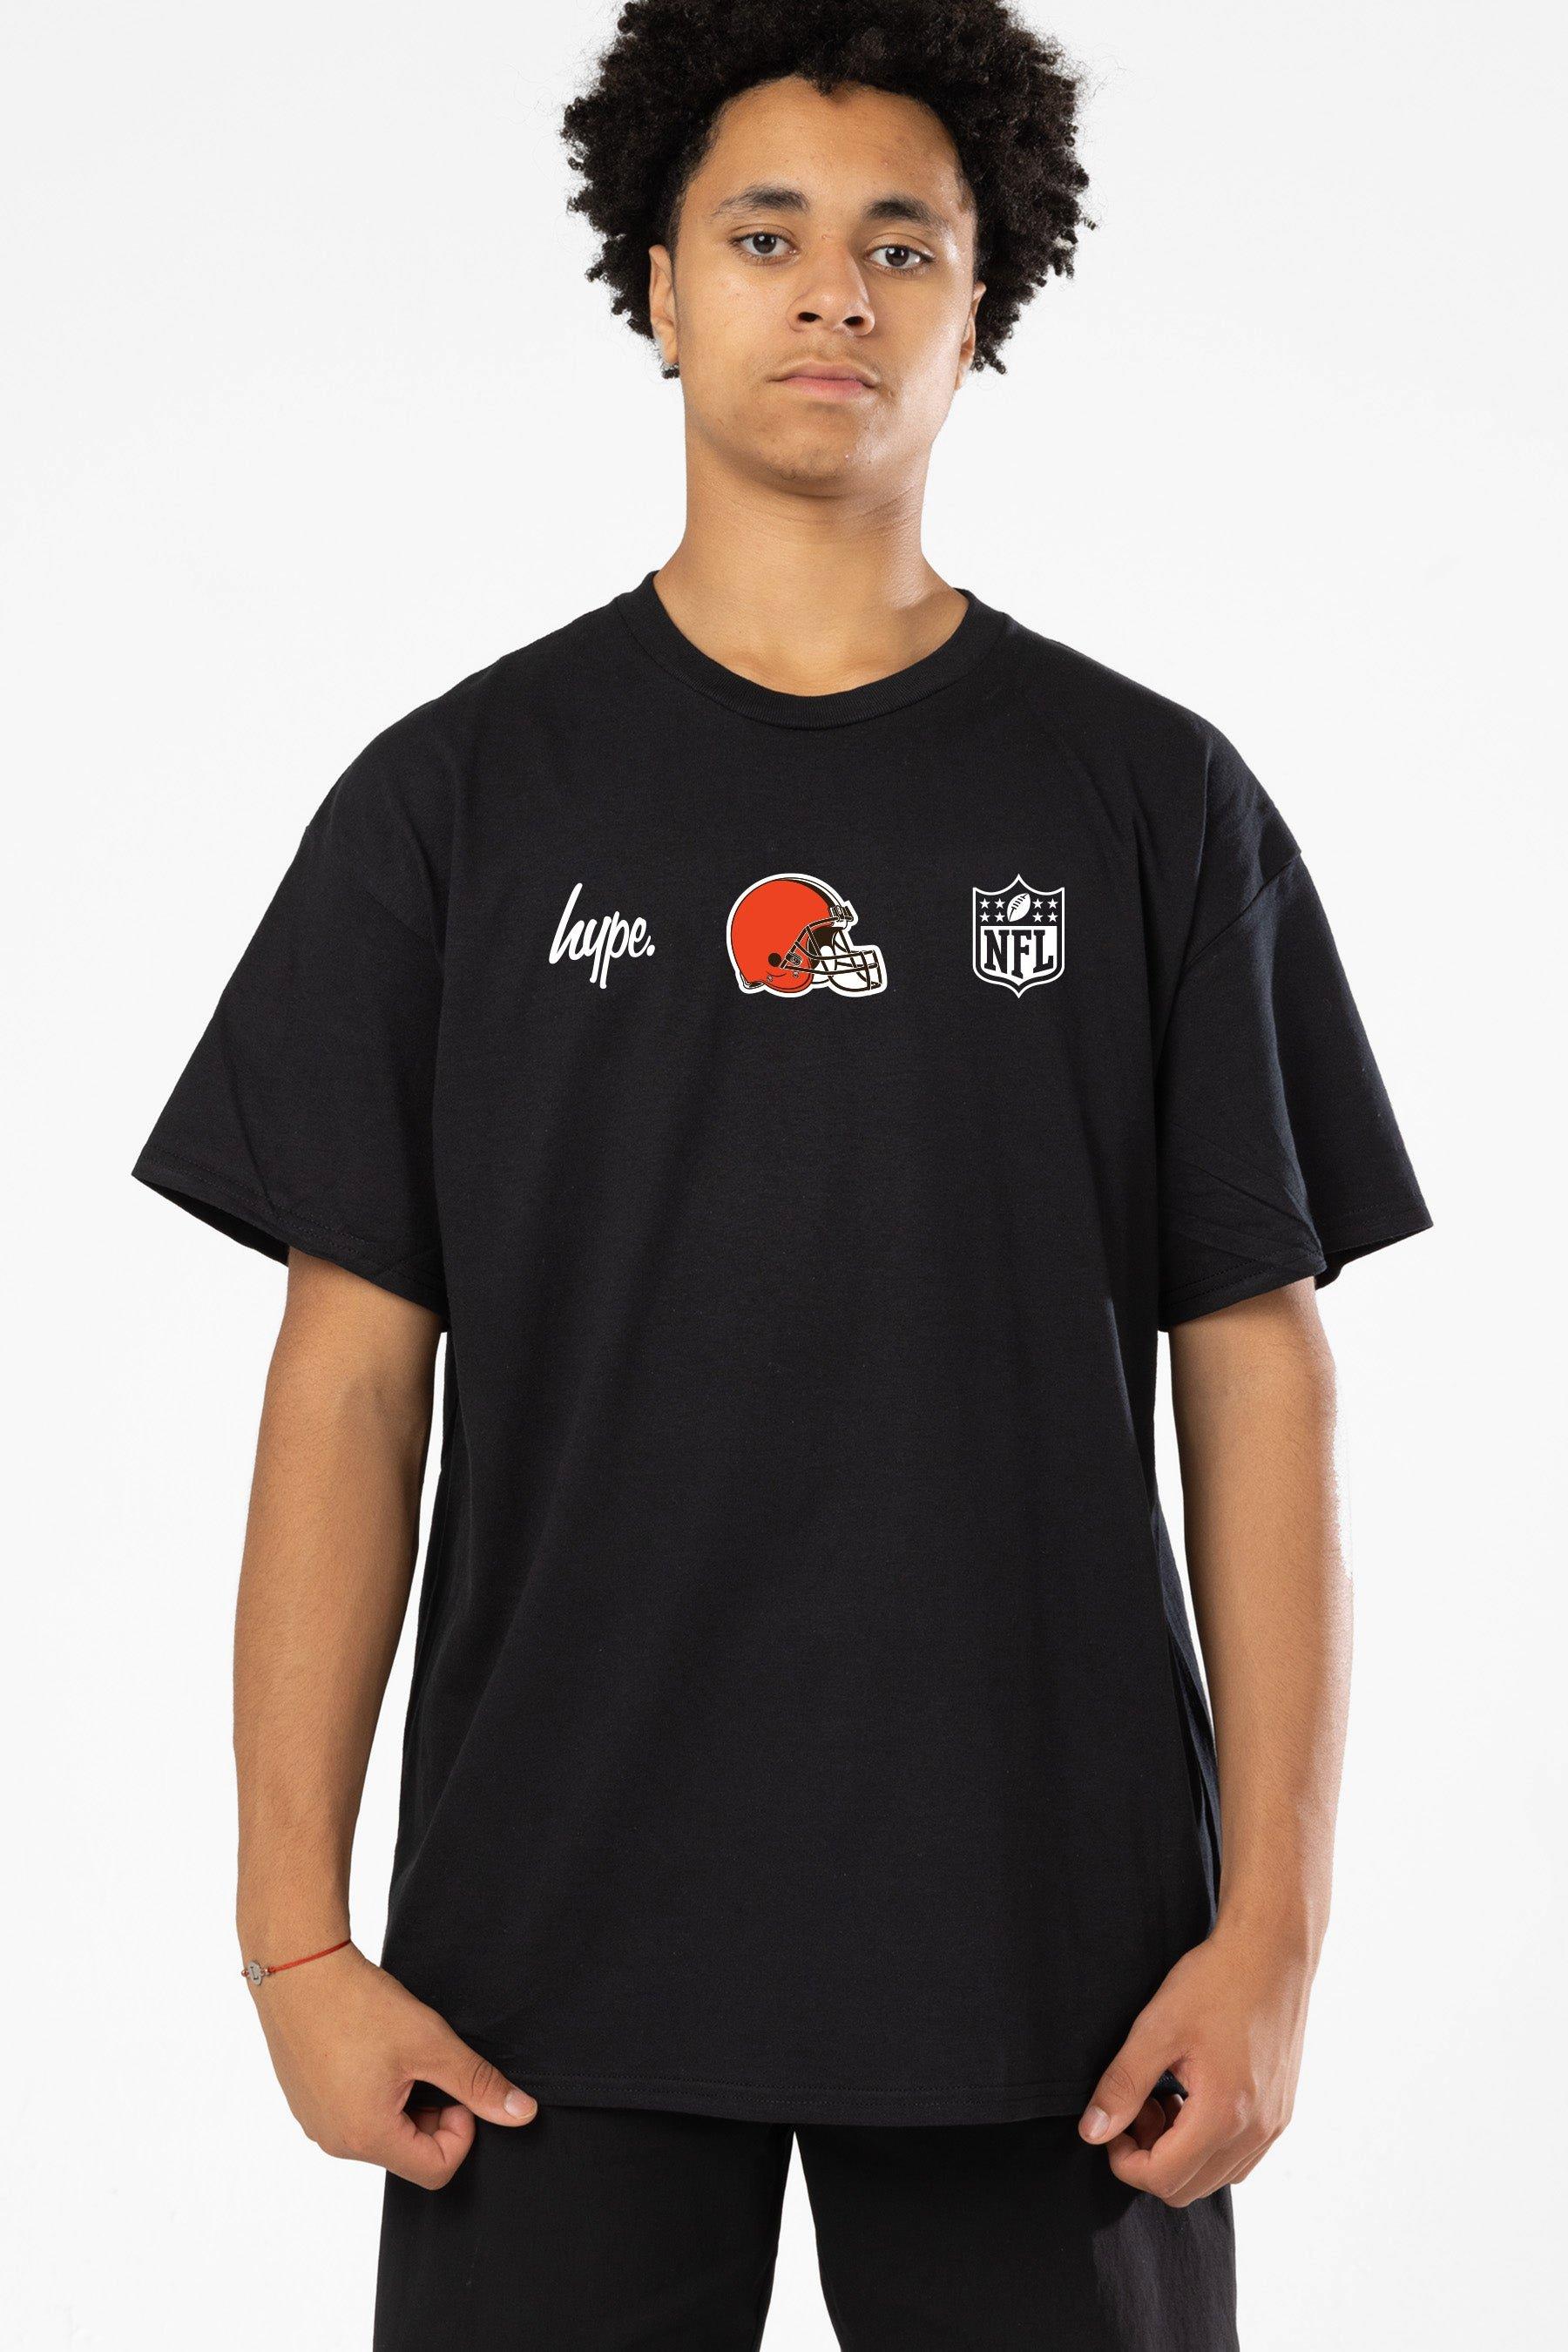 NFL X Cleveland Browns T-Shirt